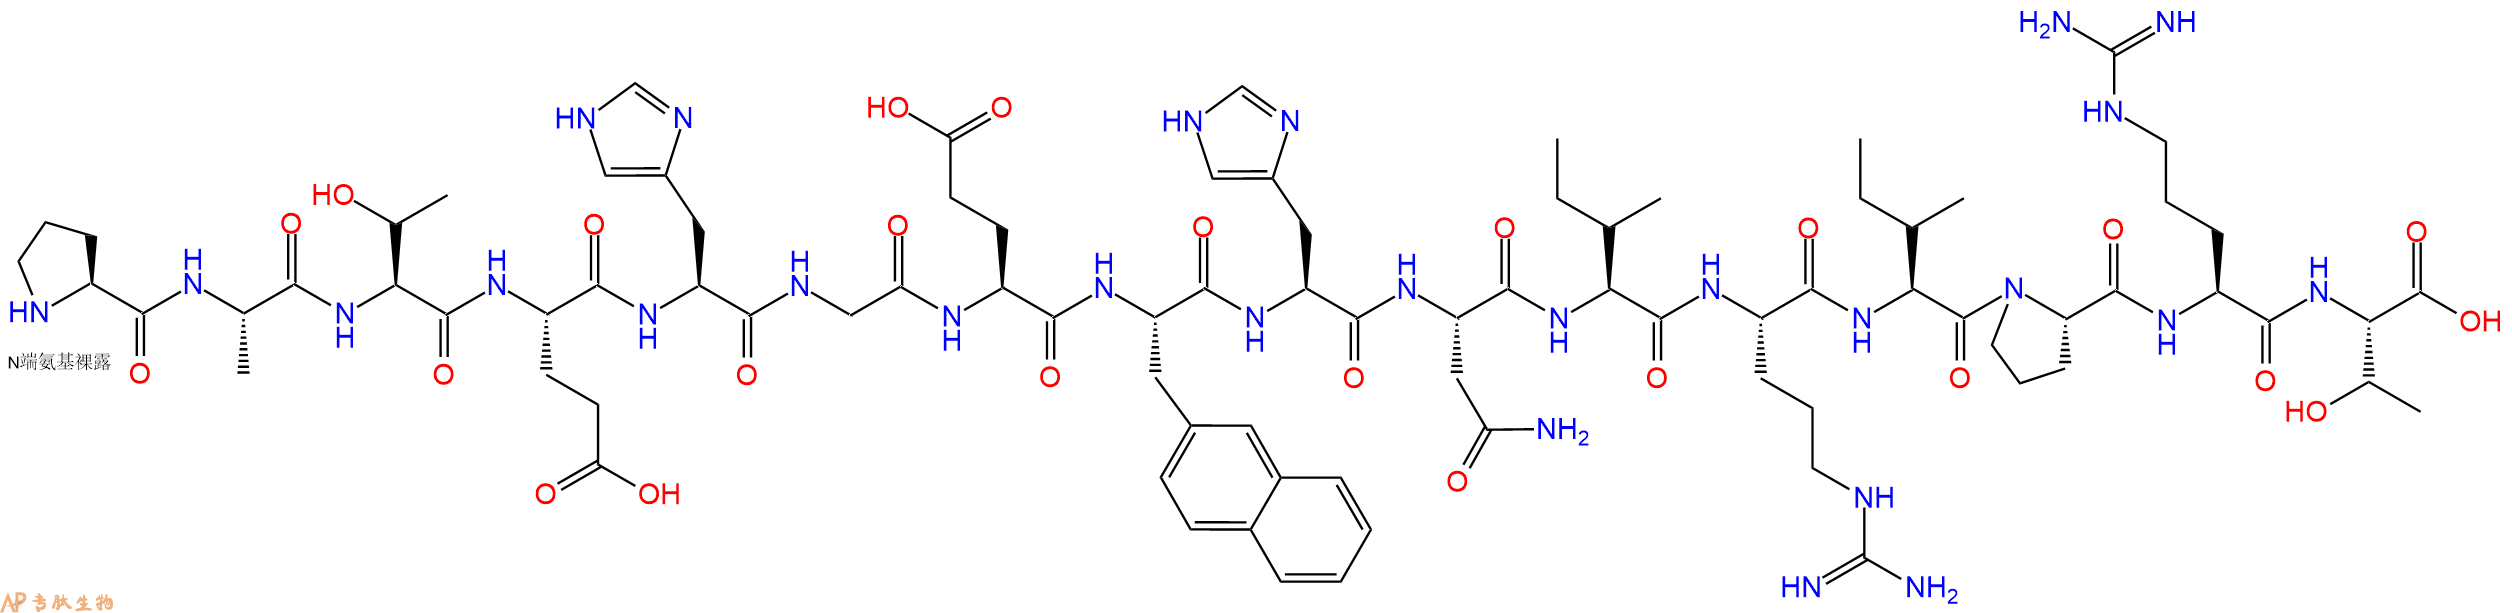 专肽生物产品H2N-Pro-Ala-Thr-Glu-His-Gly-Glu-Nal-His-Asn-Ile-Ar